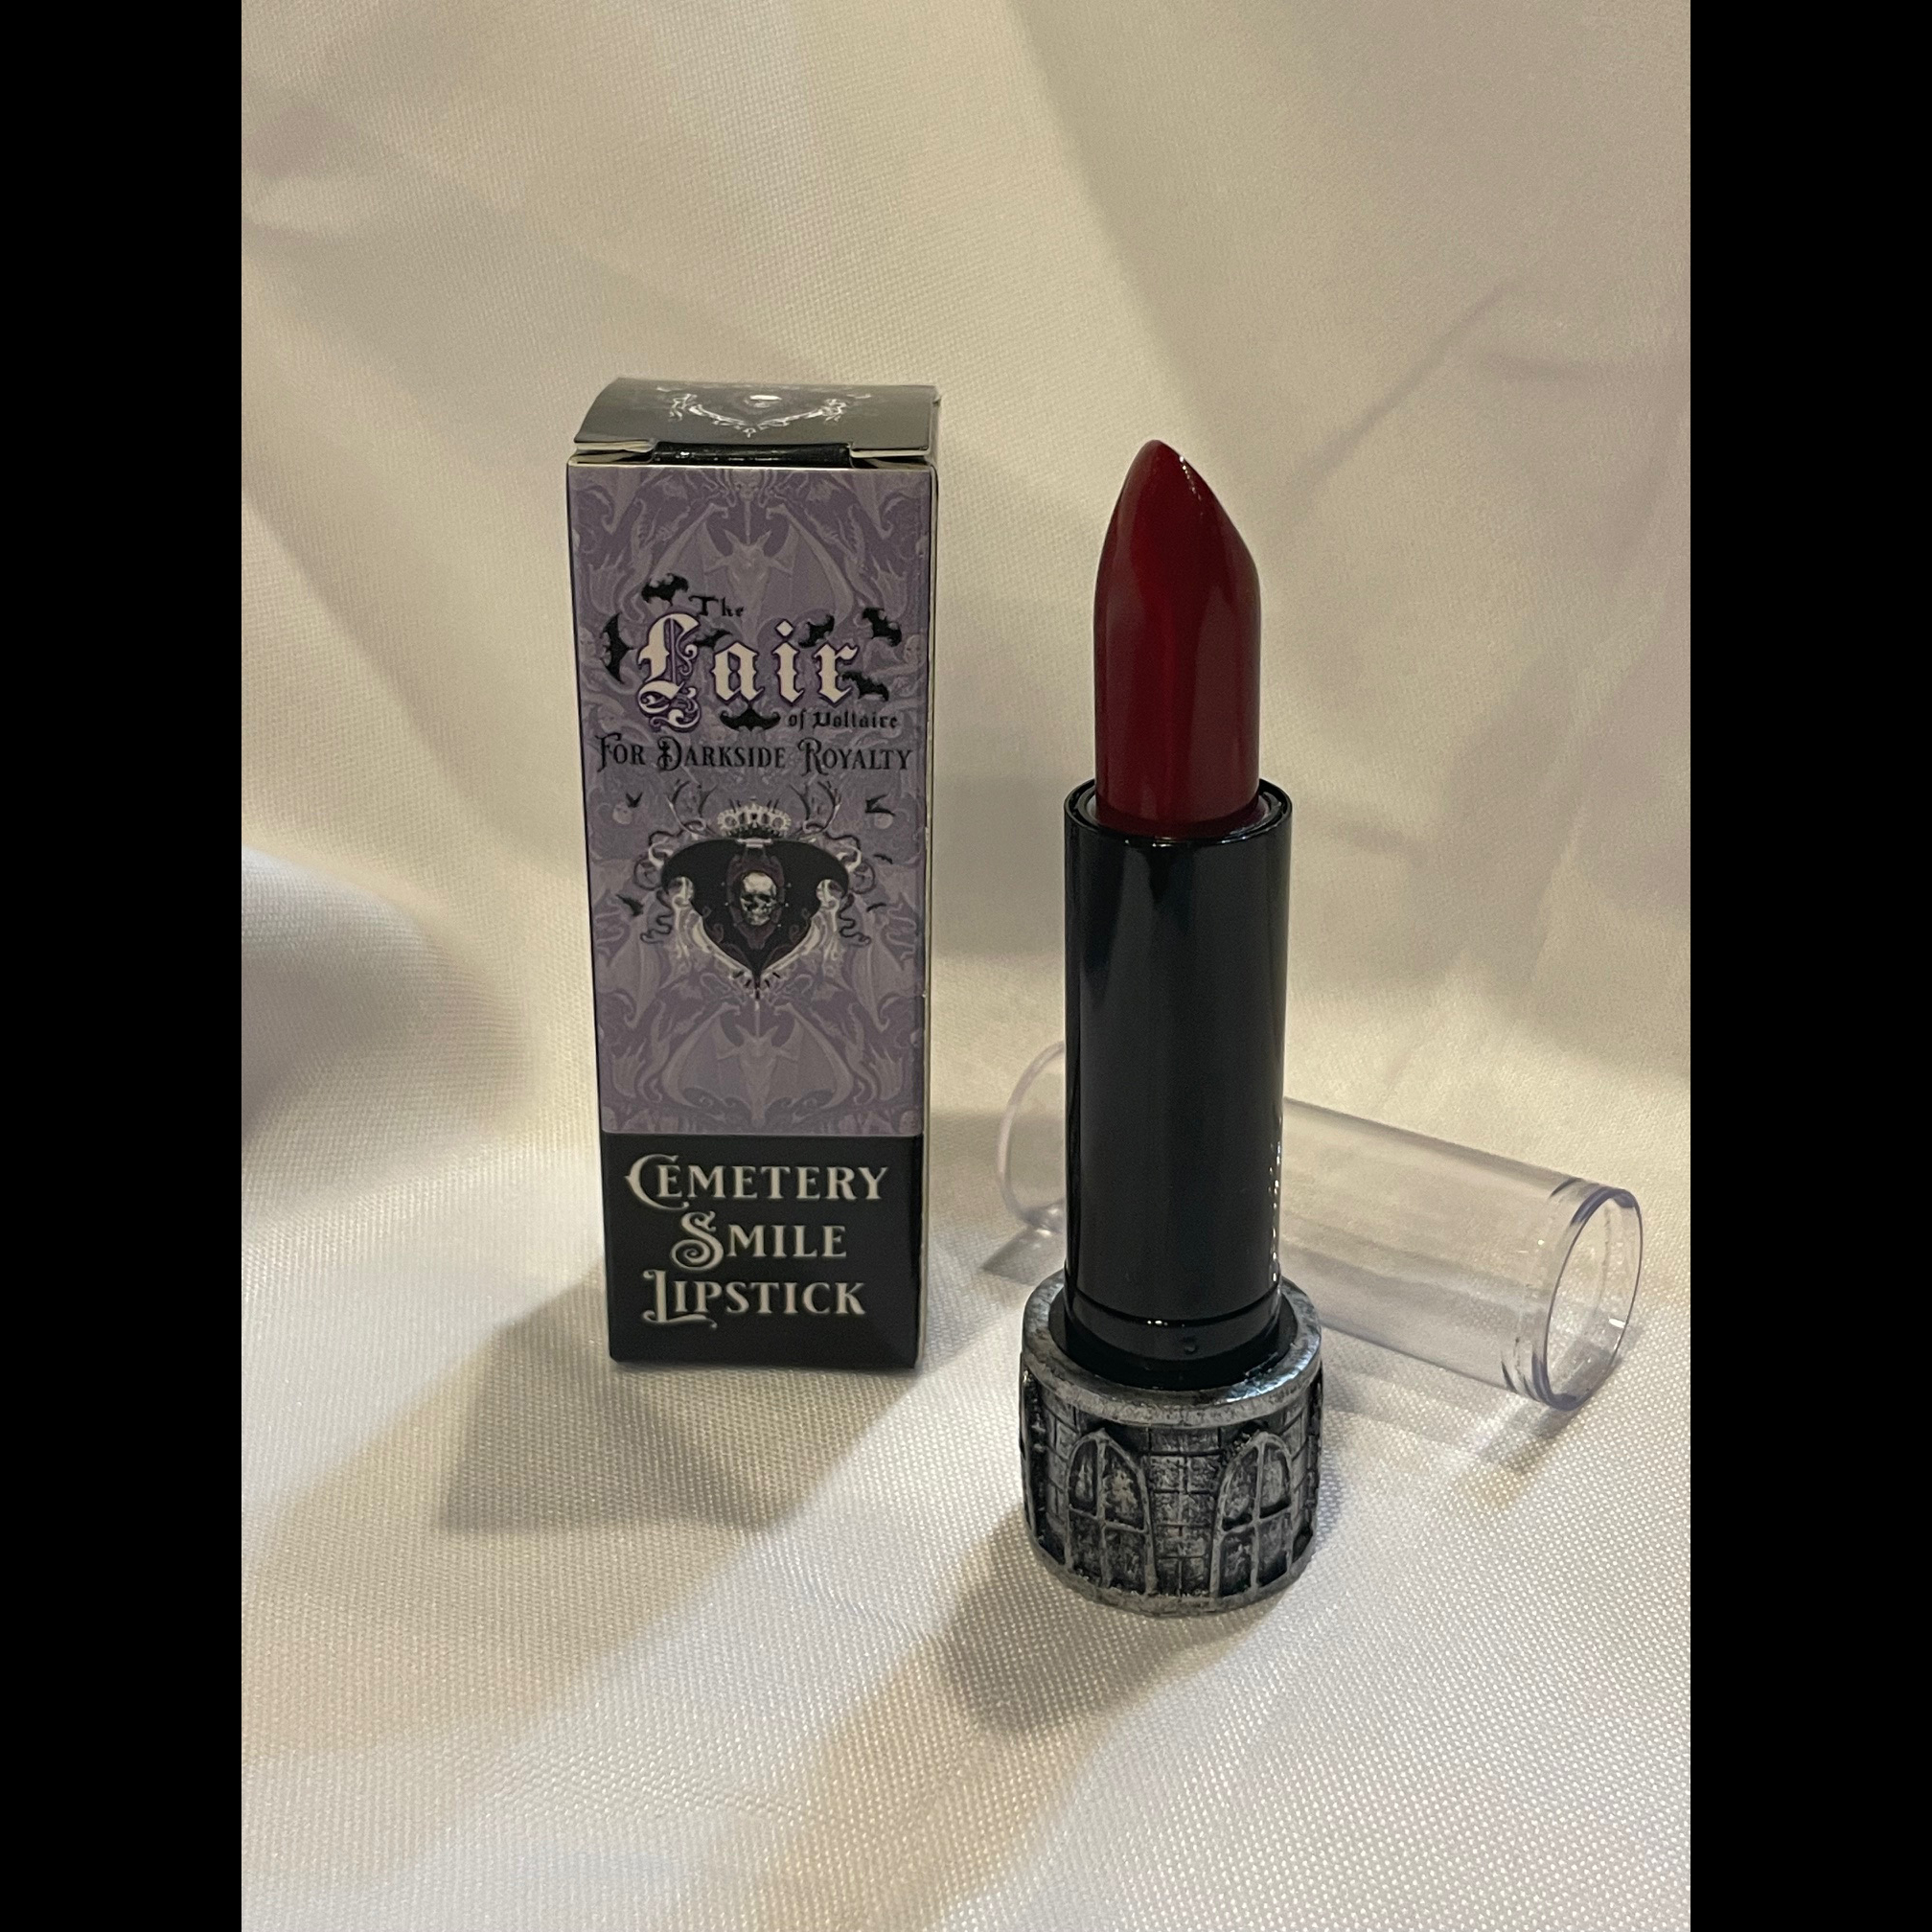 Cemetery Smile Lipstick Refill - Bloodbath (Red)